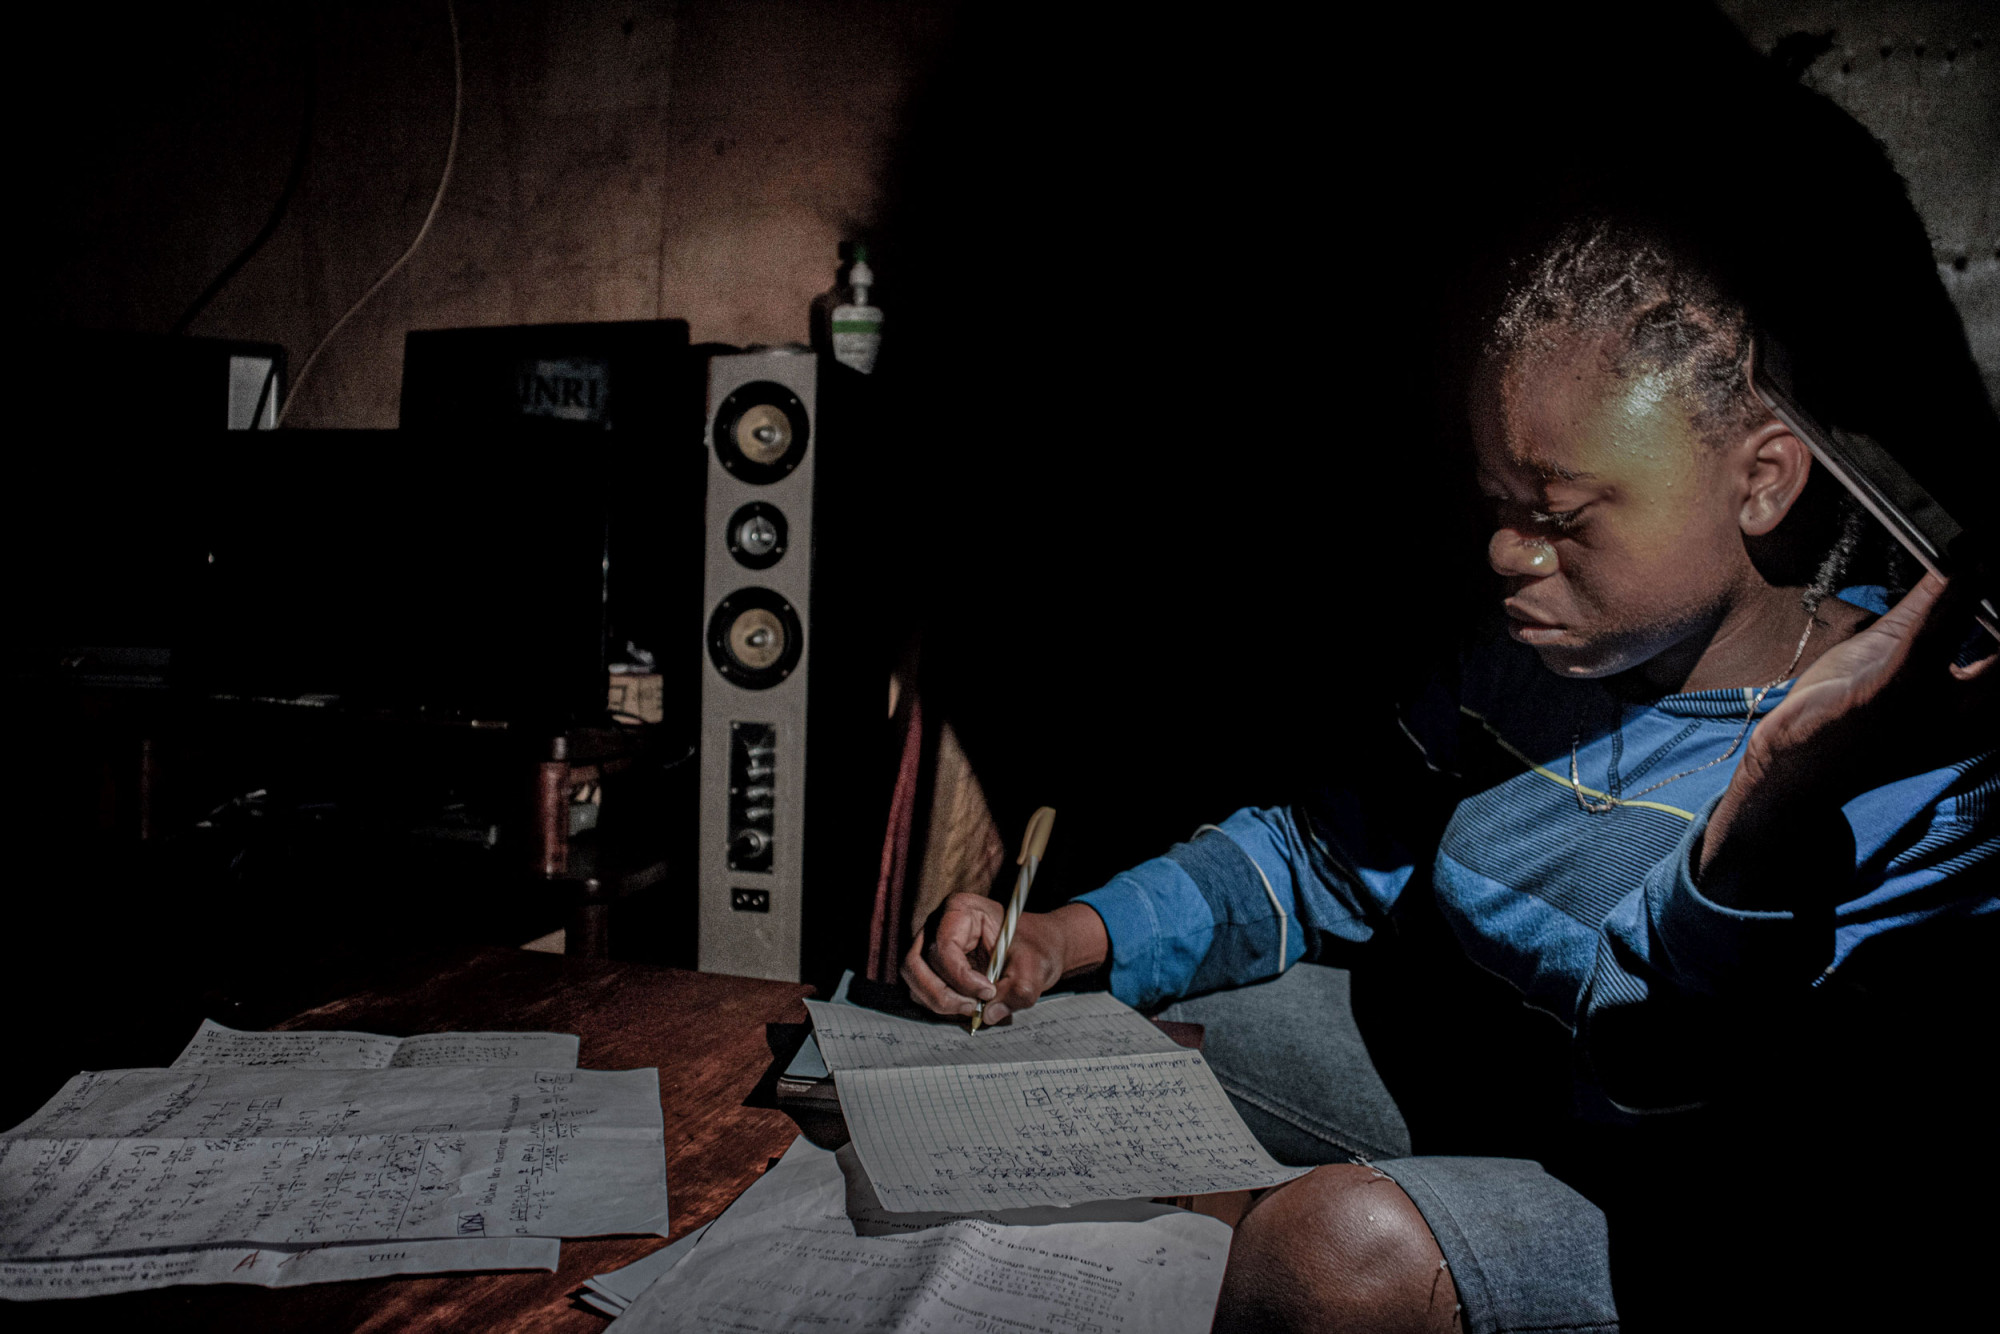 Goma, République démocratique du Congo, 27-28 avril 2020. Les écoles étant fermées pendant la période de confinement, et vu la régularité des coupures de courant dans la ville, ma petite sœur de 13 ans étudie à la maison en s’aidant de la torche d’un téléphone. © Arlette Bashizi pour la Fondation Carmignac